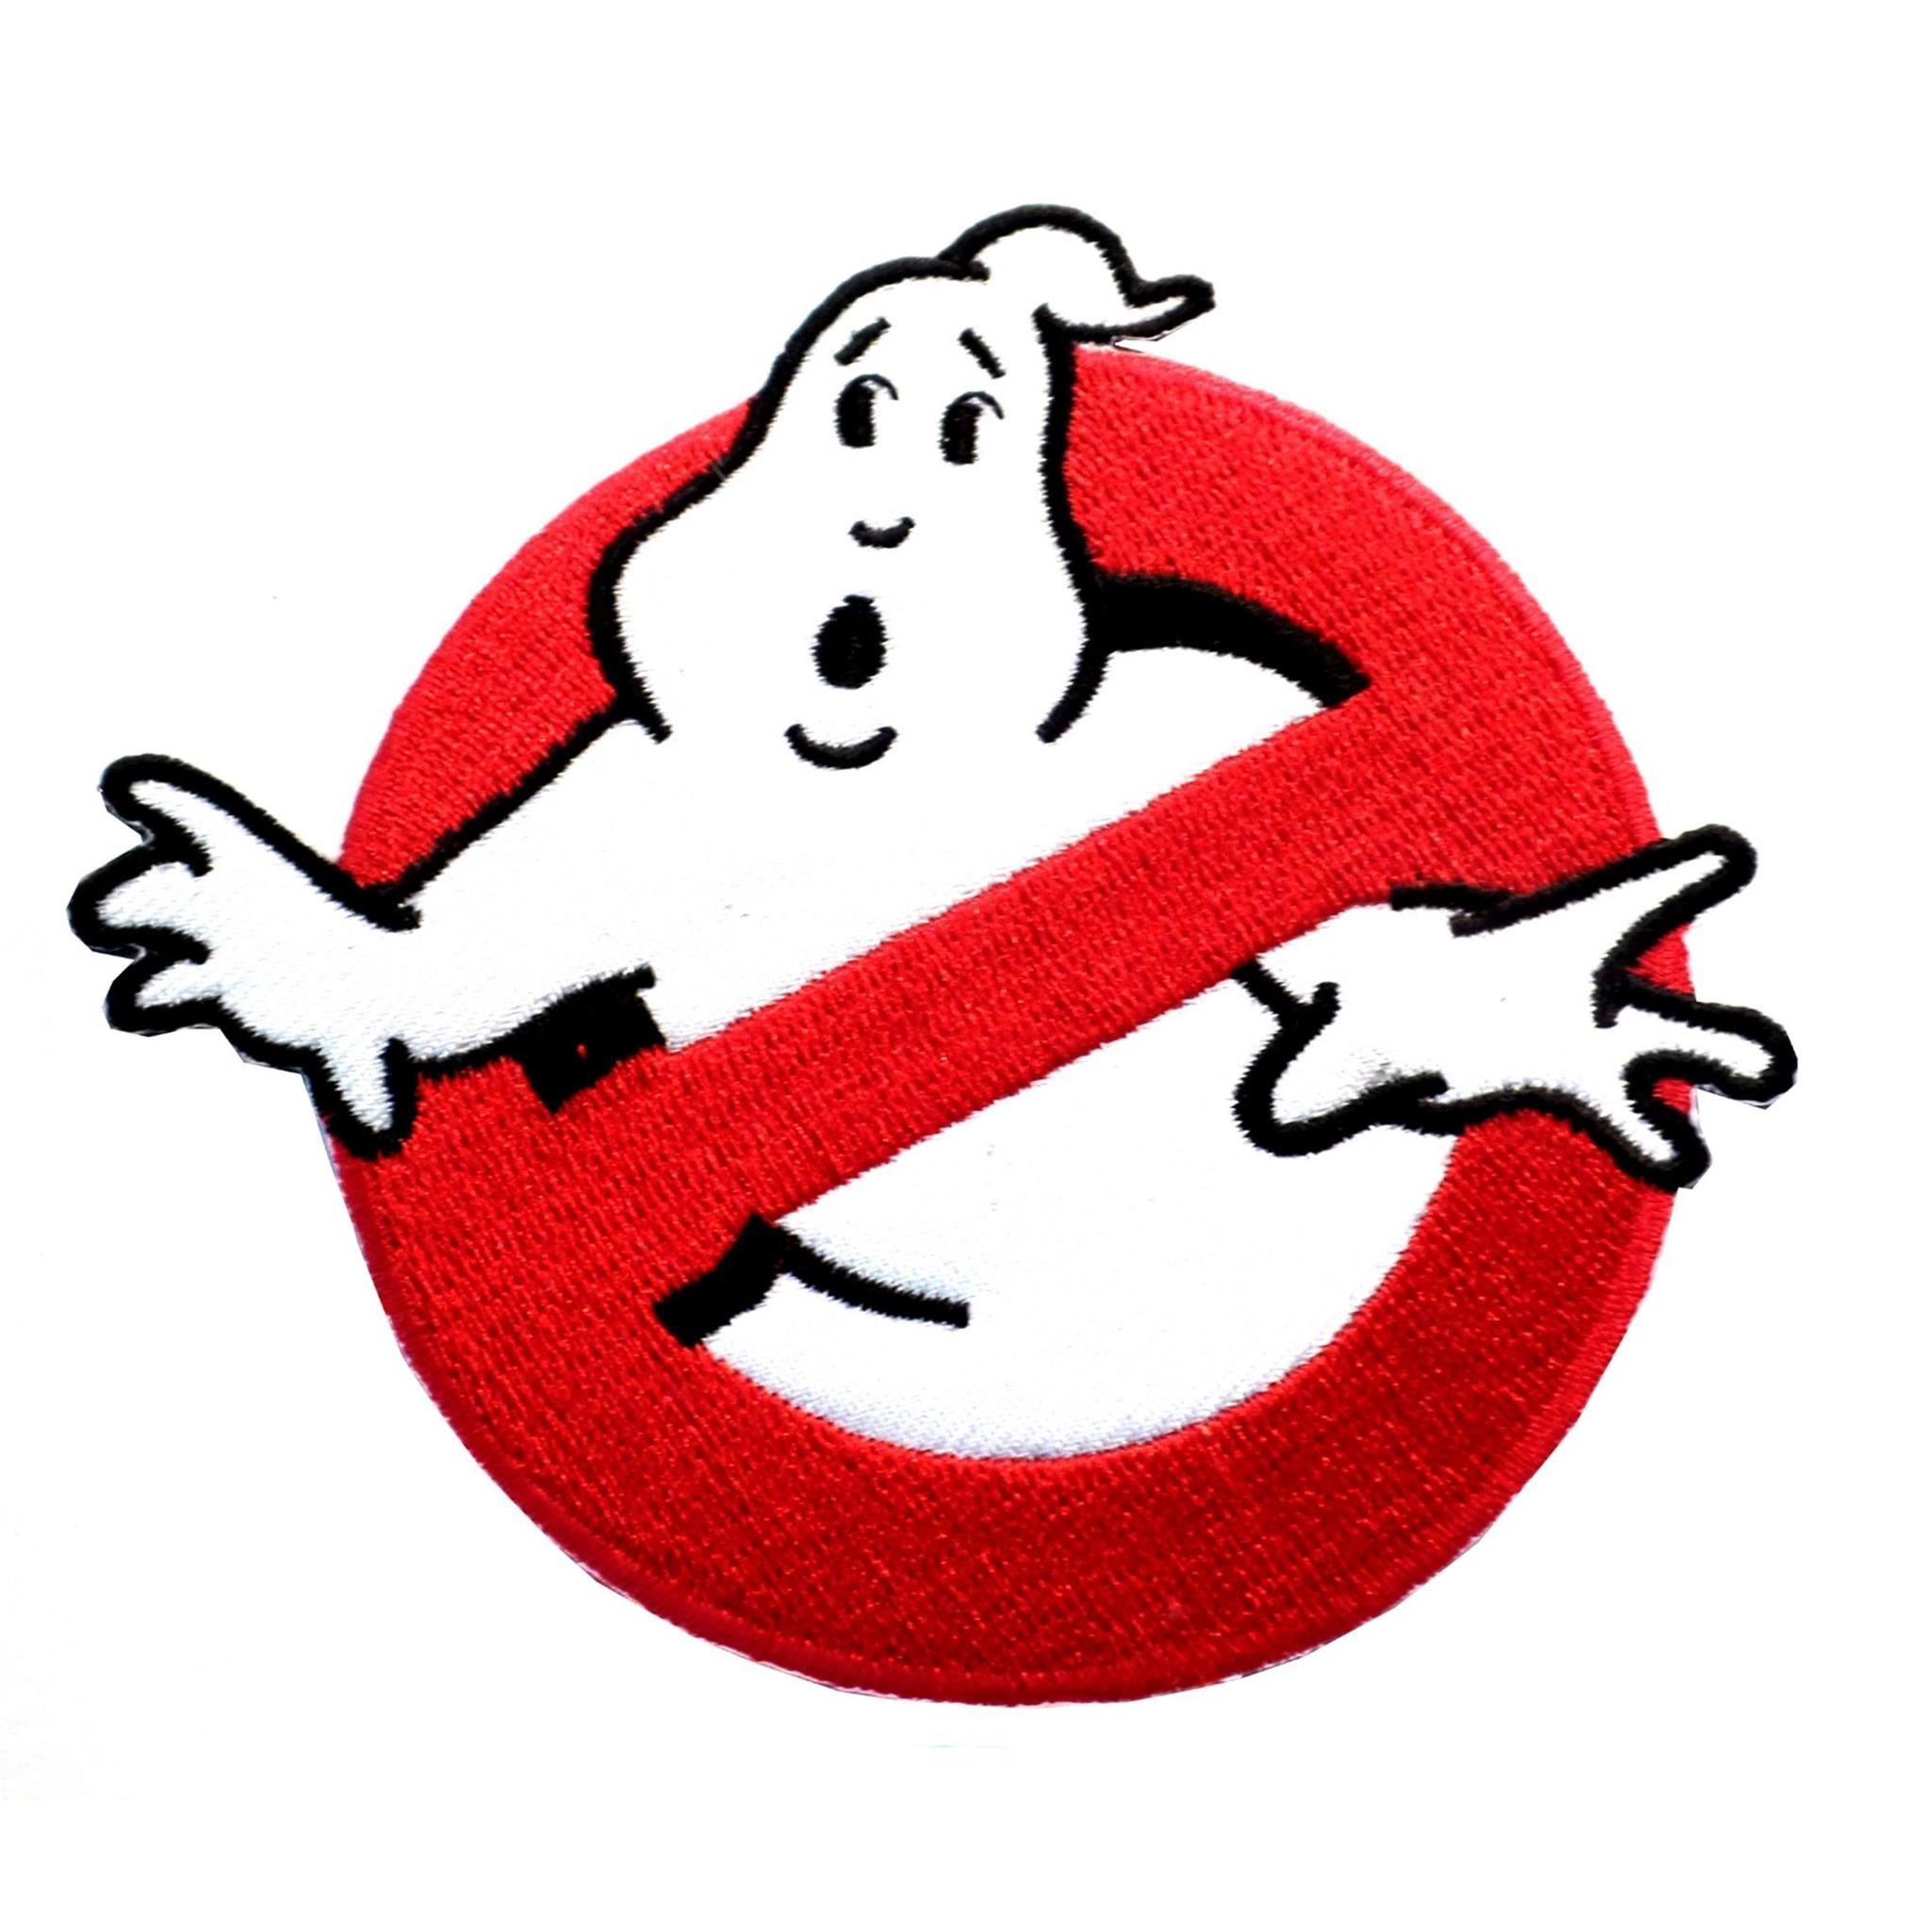 Ghostbusters Logo - Superheroes Ghostbusters 4